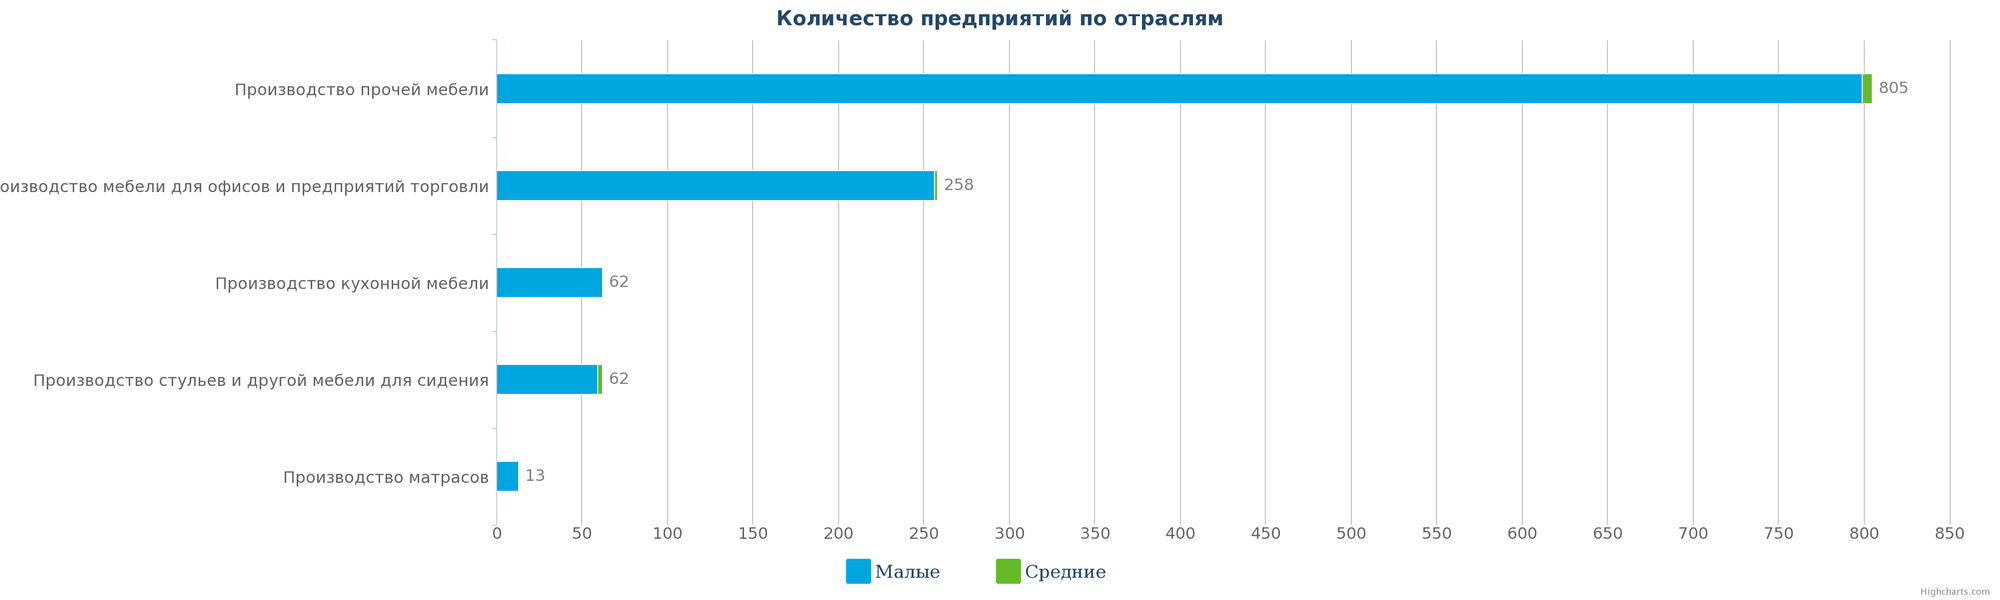 2   Кількість виробників меблів Казахстану за розмірами підприємства на 13